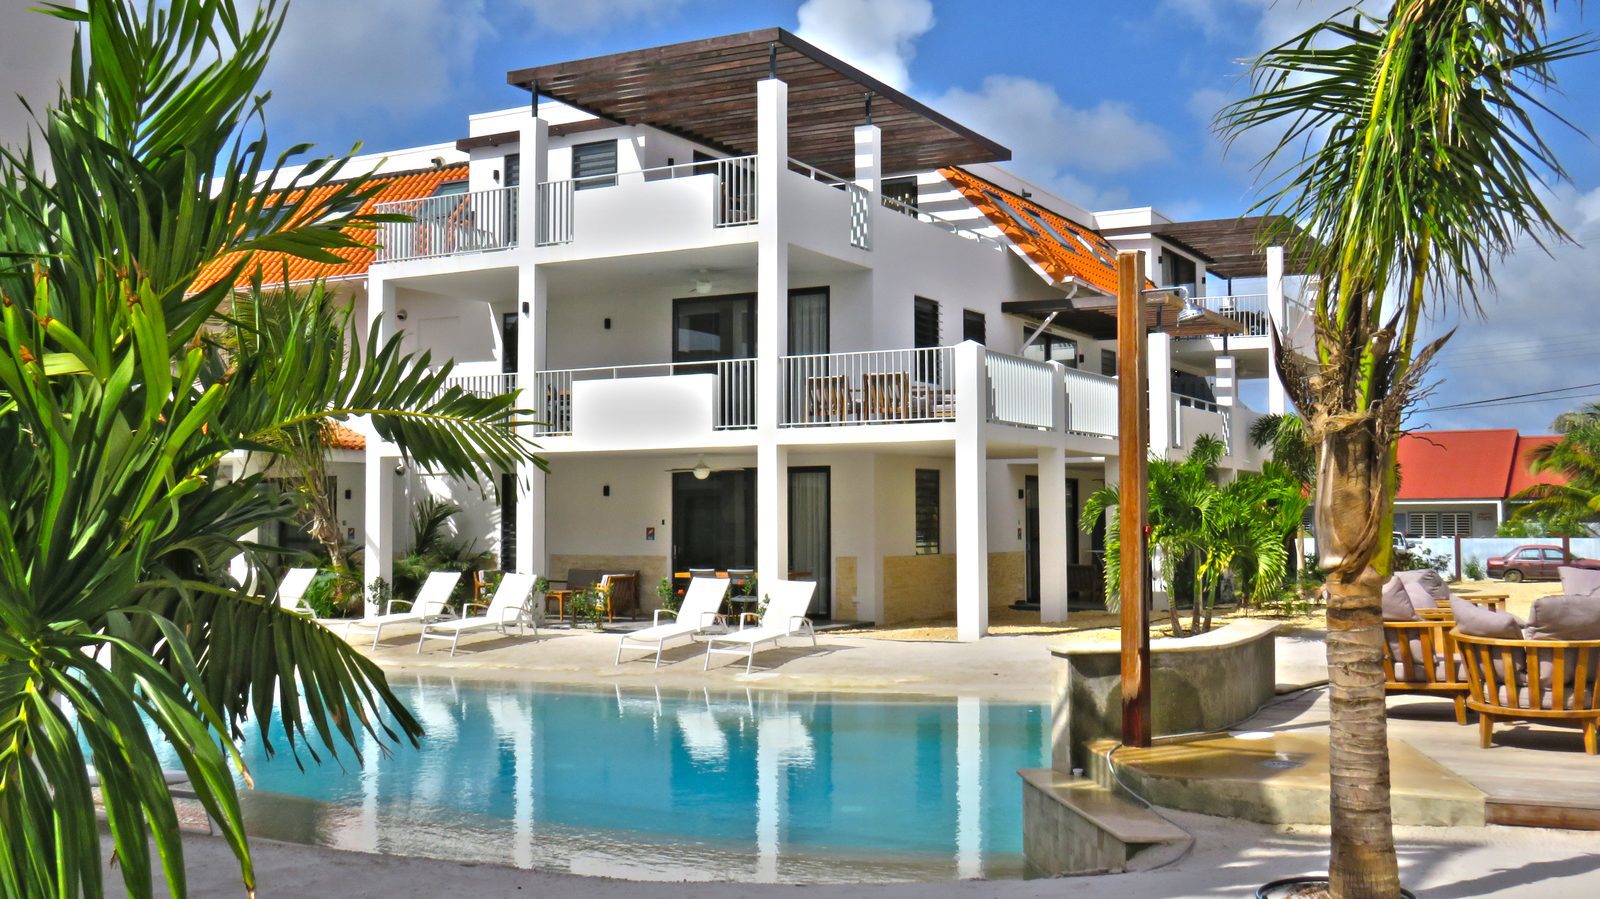 Deseja passar férias em Bonaire? Isso é possível no Resort Bonaire! Temos vários apartamentos que são luxuosos e têm tudo o que precisa.